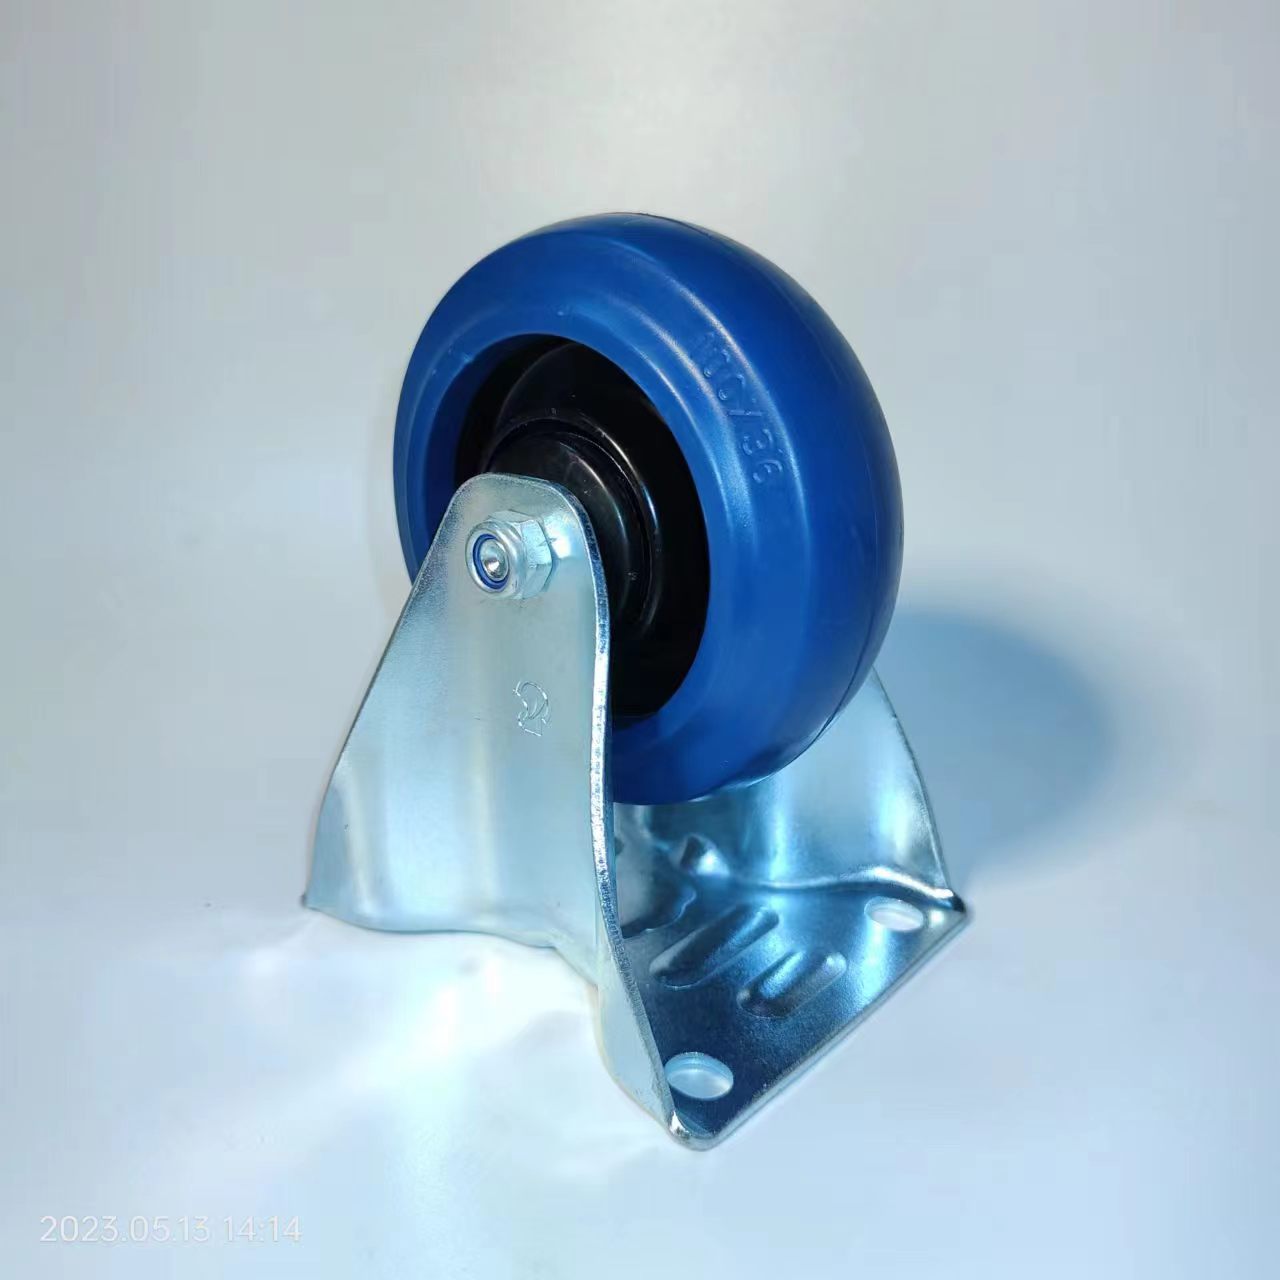 [productes d'aquesta setmana] Roda industrial europea de 100 mm, cautxú elàstic blau, coixinet de boles